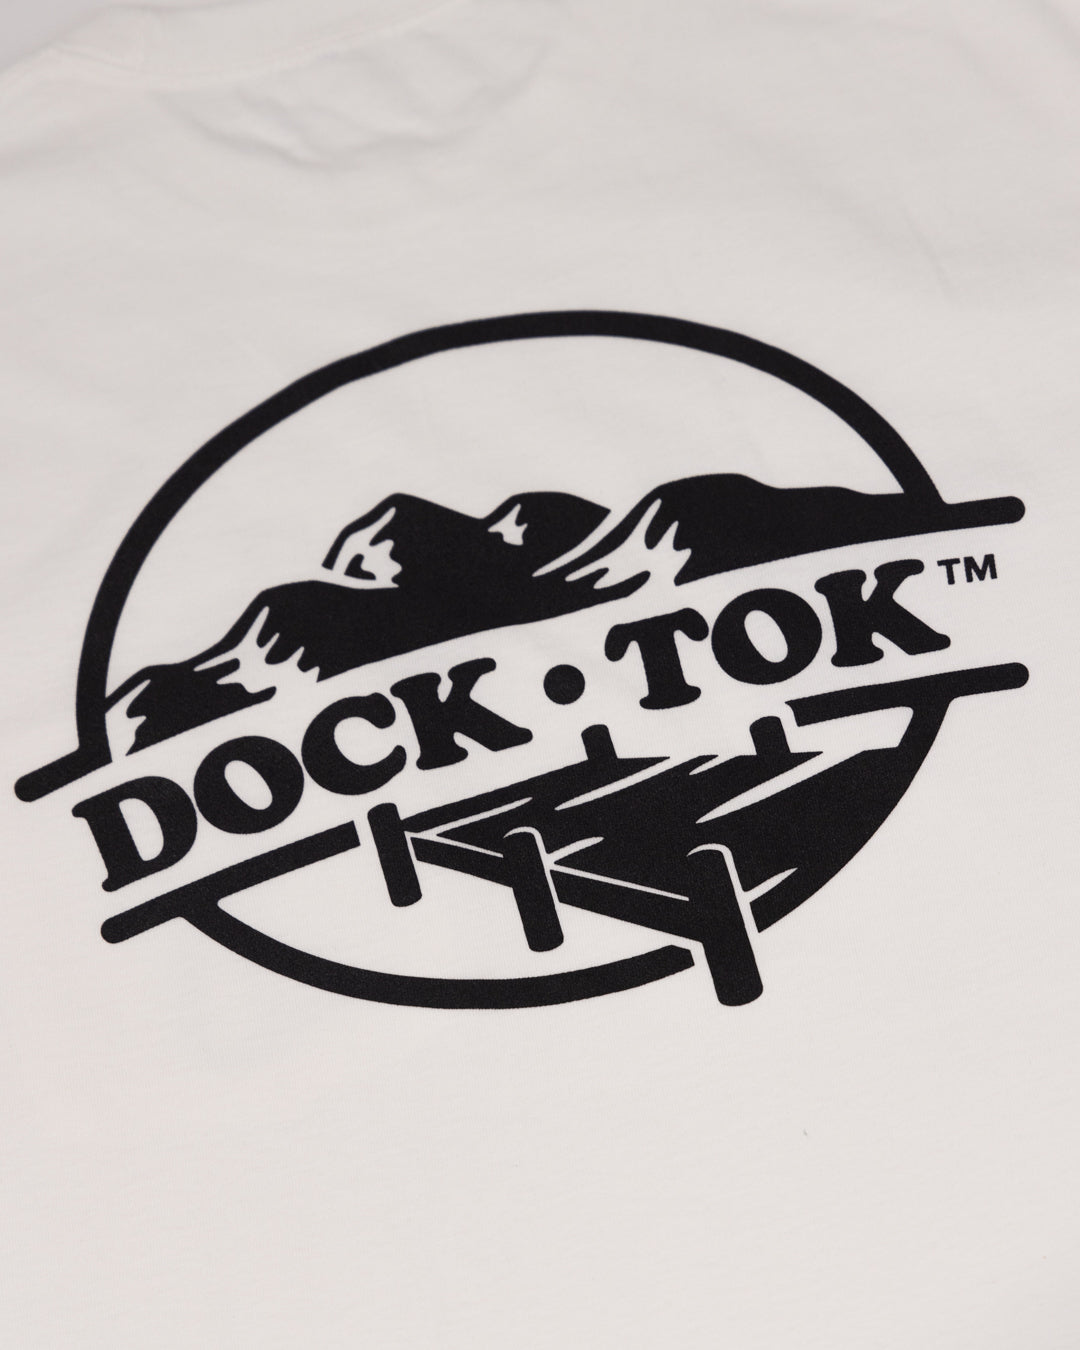 Dock Tok Tee- White